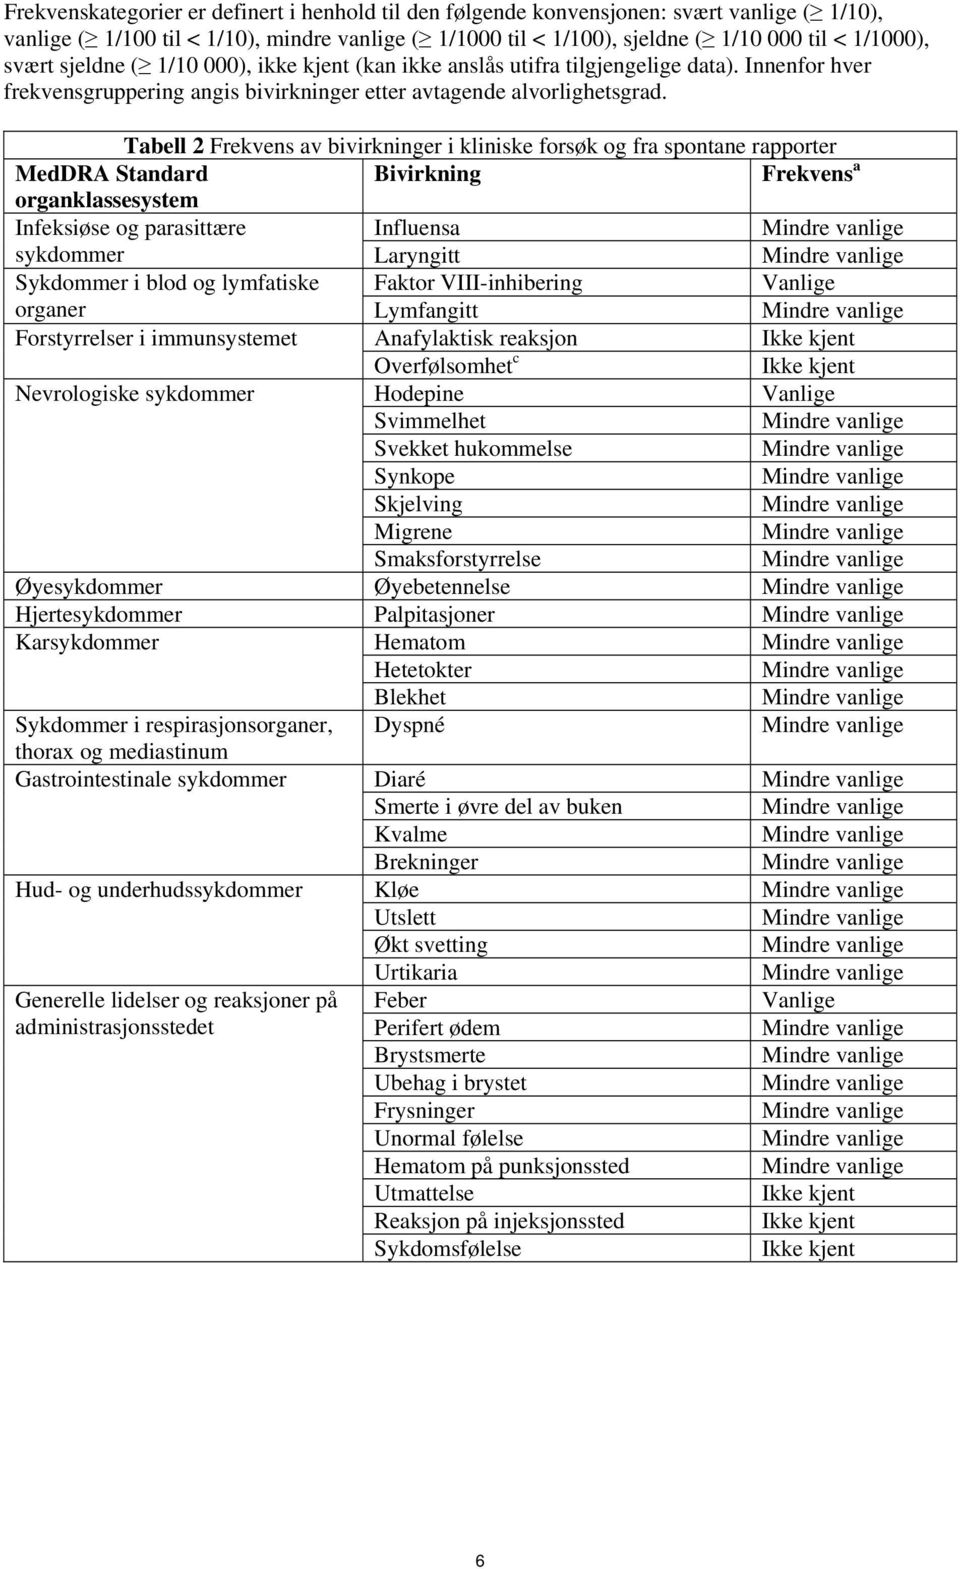 Tabell 2 Frekvens av bivirkninger i kliniske forsøk og fra spontane rapporter MedDRA Standard Bivirkning Frekvens a organklassesystem Infeksiøse og parasittære Influensa sykdommer Laryngitt Sykdommer